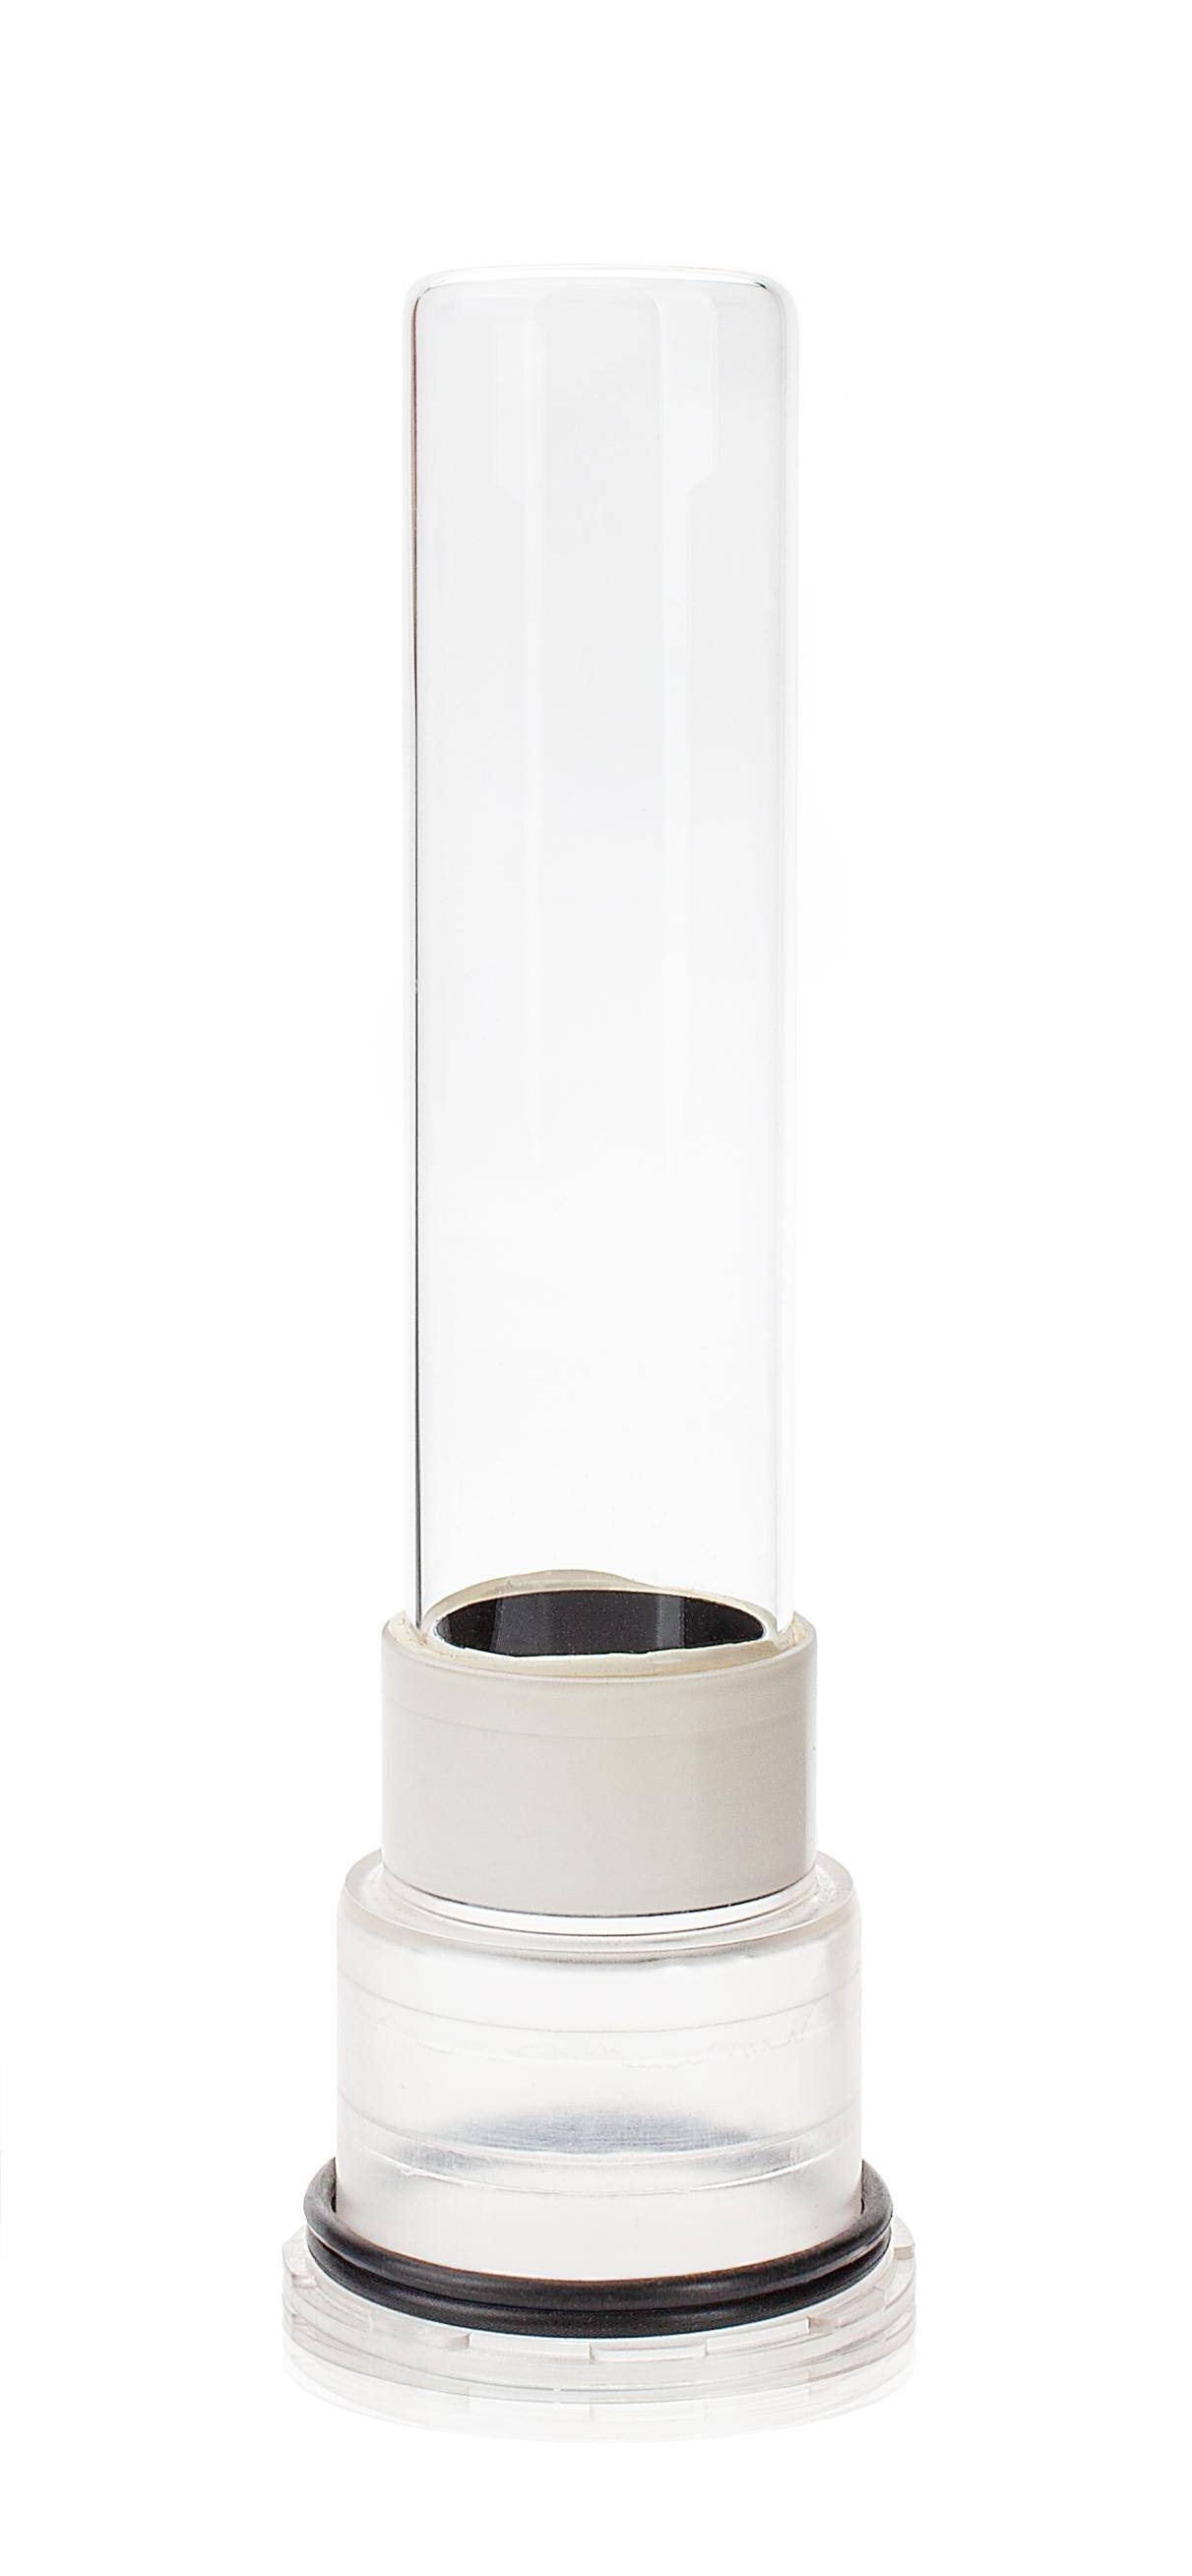 UV-Lampenröhre 7W Happet (L-U026JT)